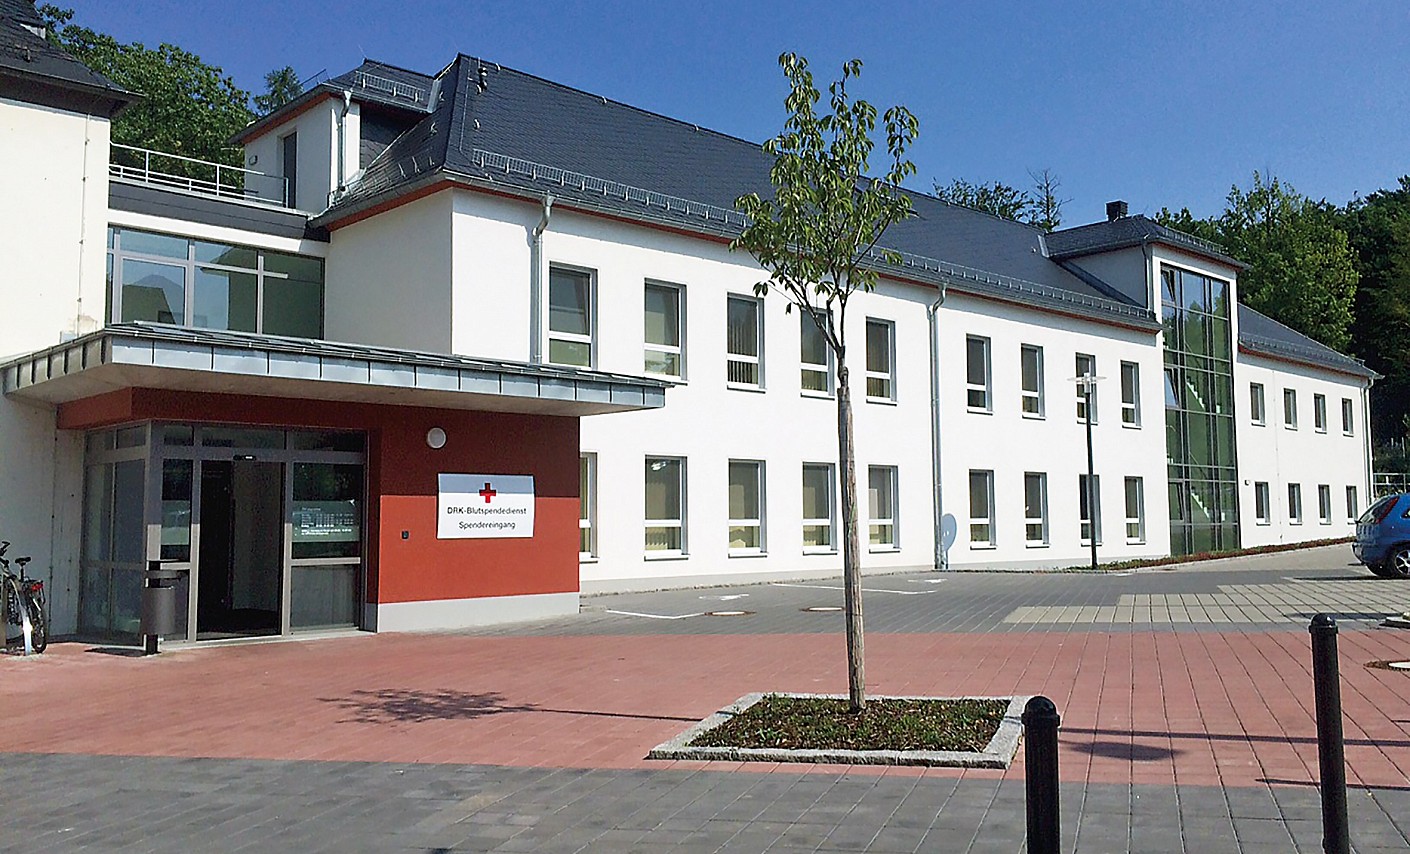 Institut Chemnitz